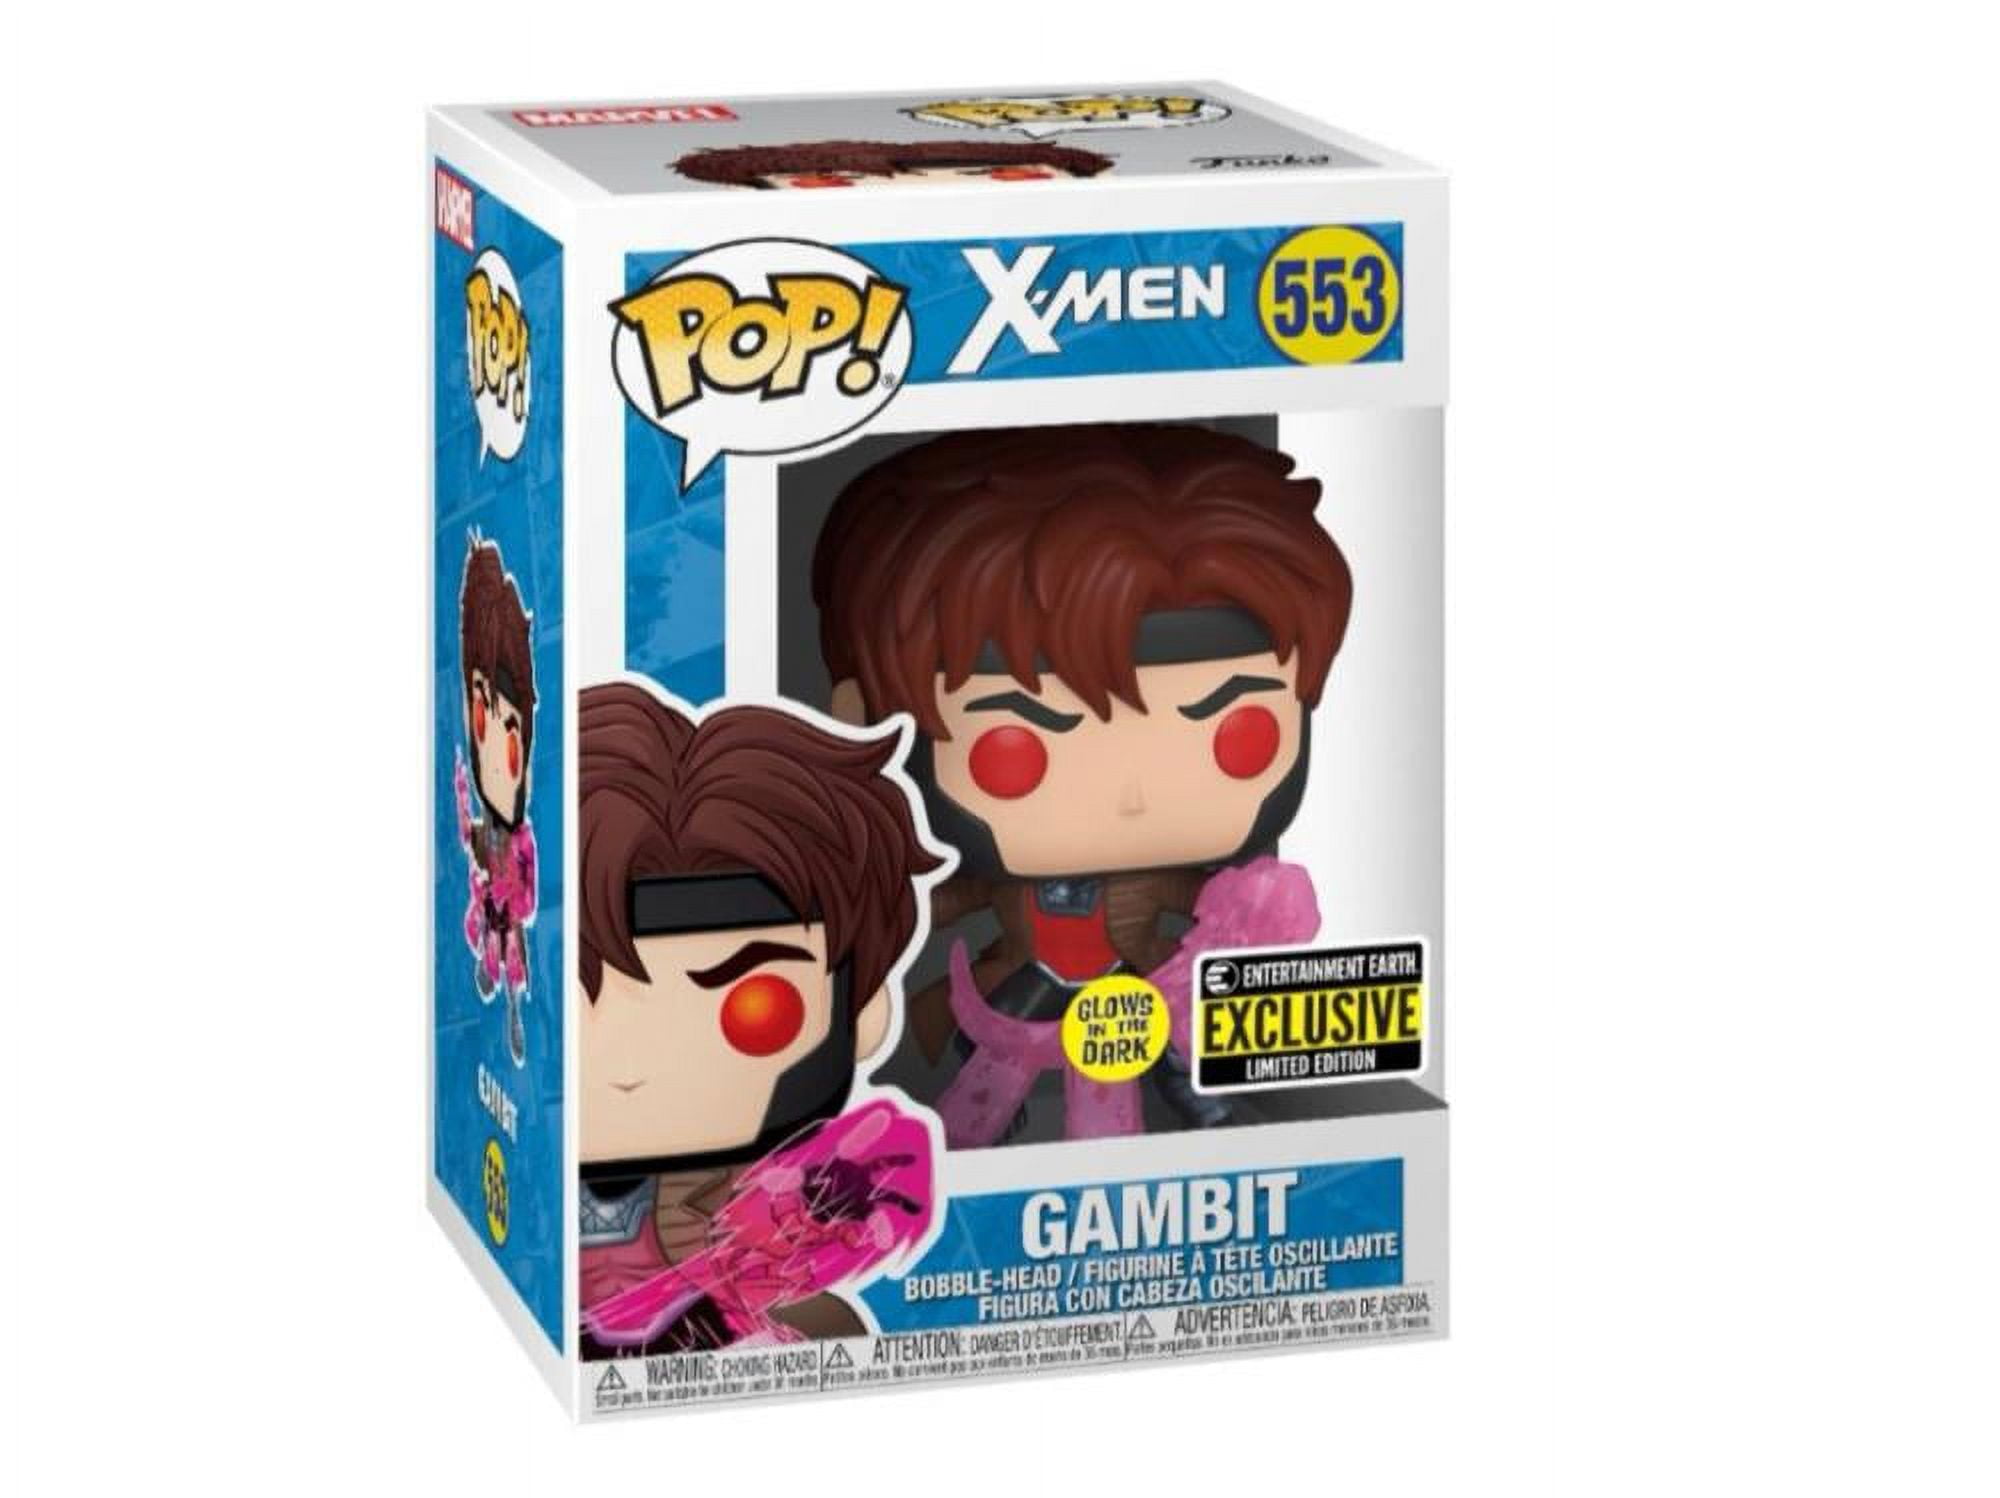  X-Men Gambit Glow-in-the Dark Pop! Vinyl Figure - EE Exclusive  : Toys & Games